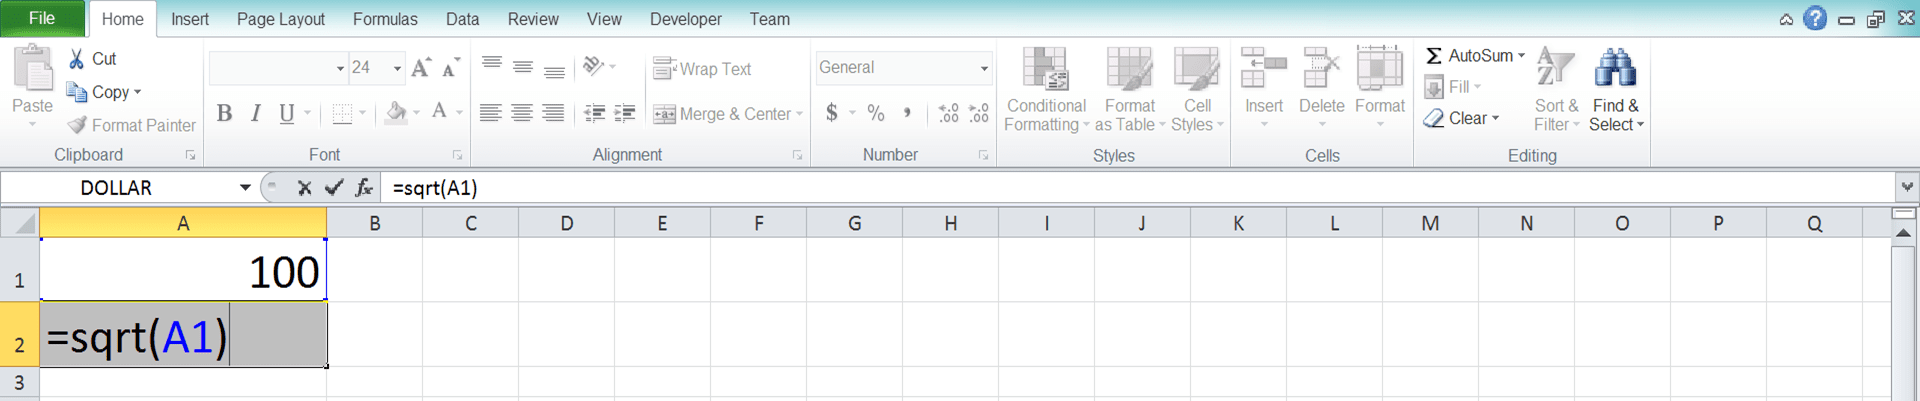 Cara Menghitung Akar di Excel Beserta Berbagai Rumus dan Fungsinya - Screenshot Langkah 3-4